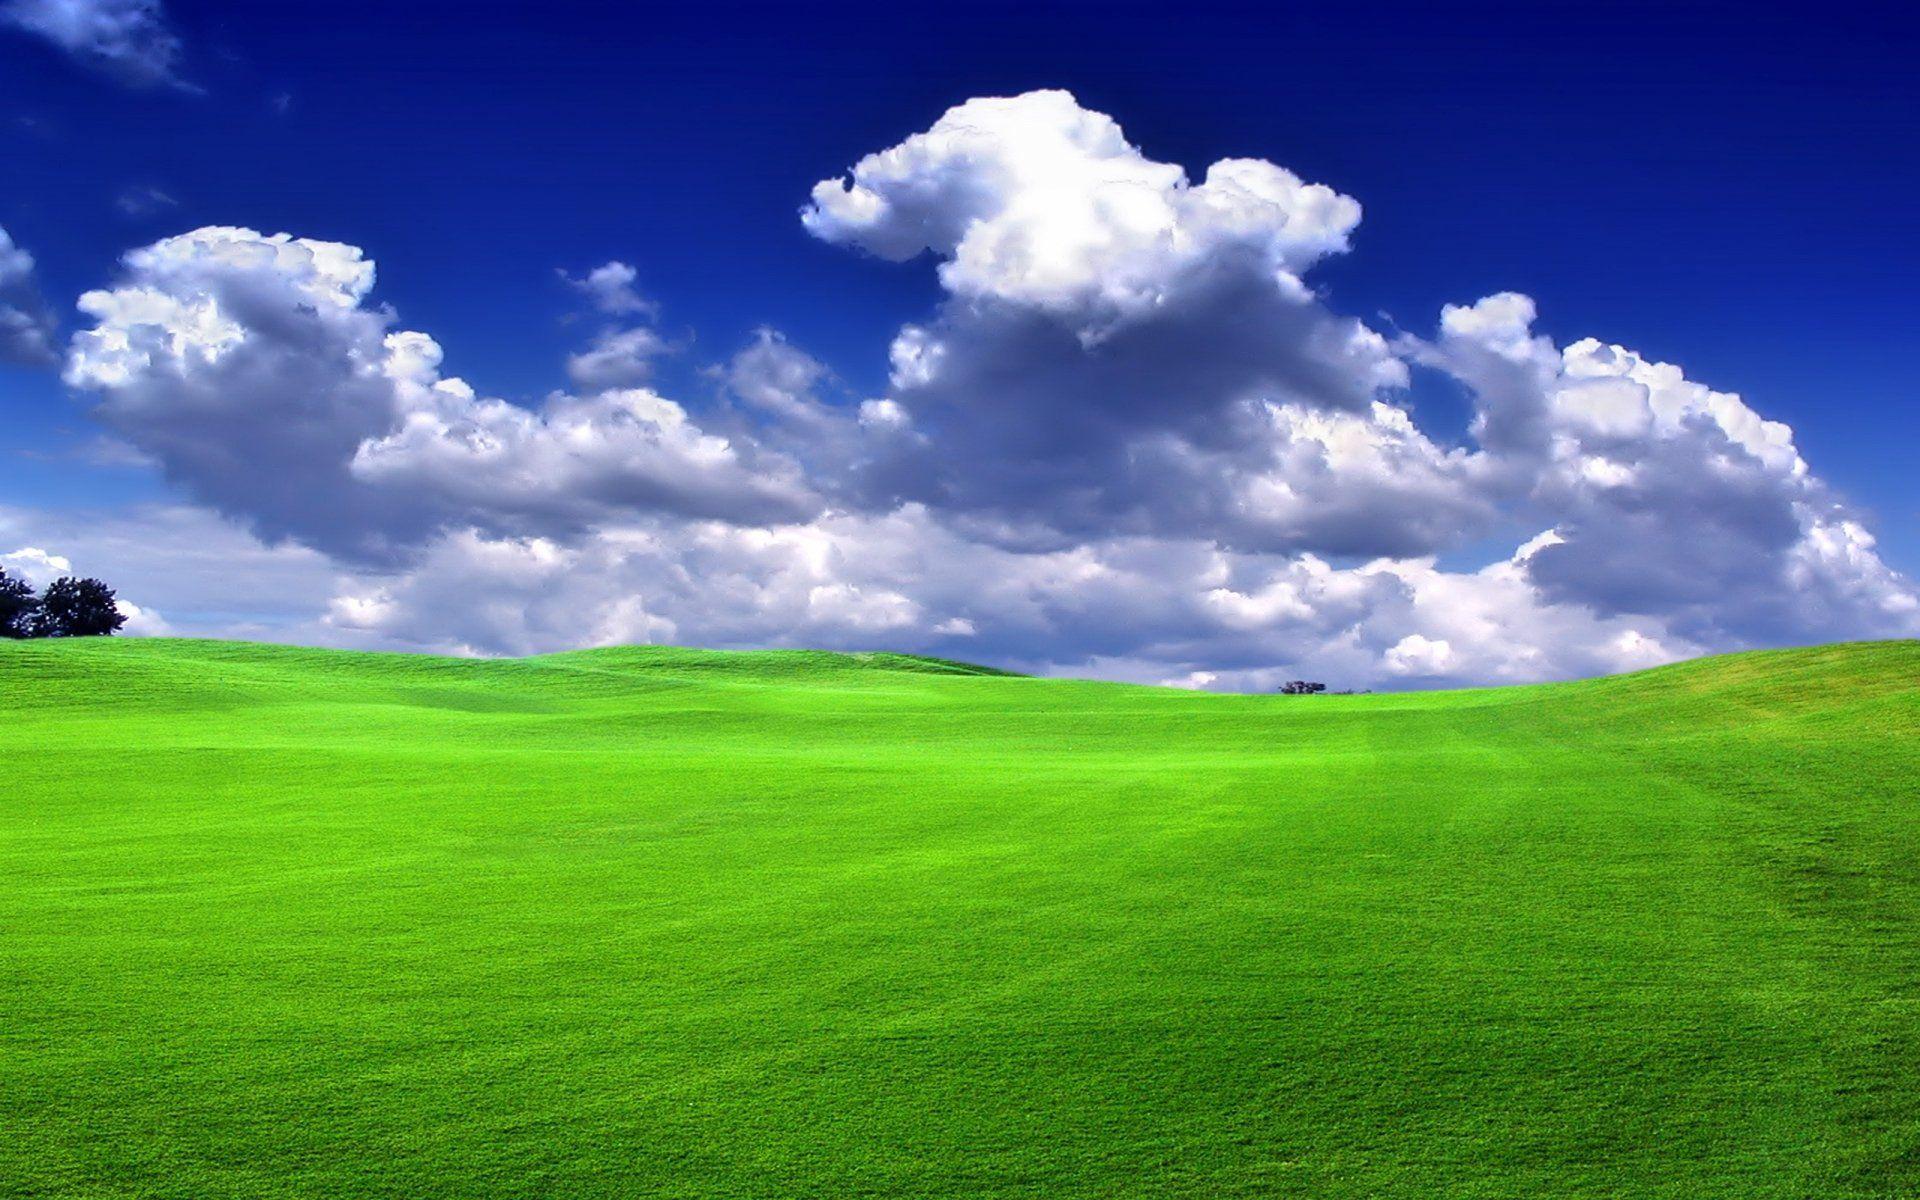 Nature & Landscape Blue Sky and Green Grass wallpaper Desktop